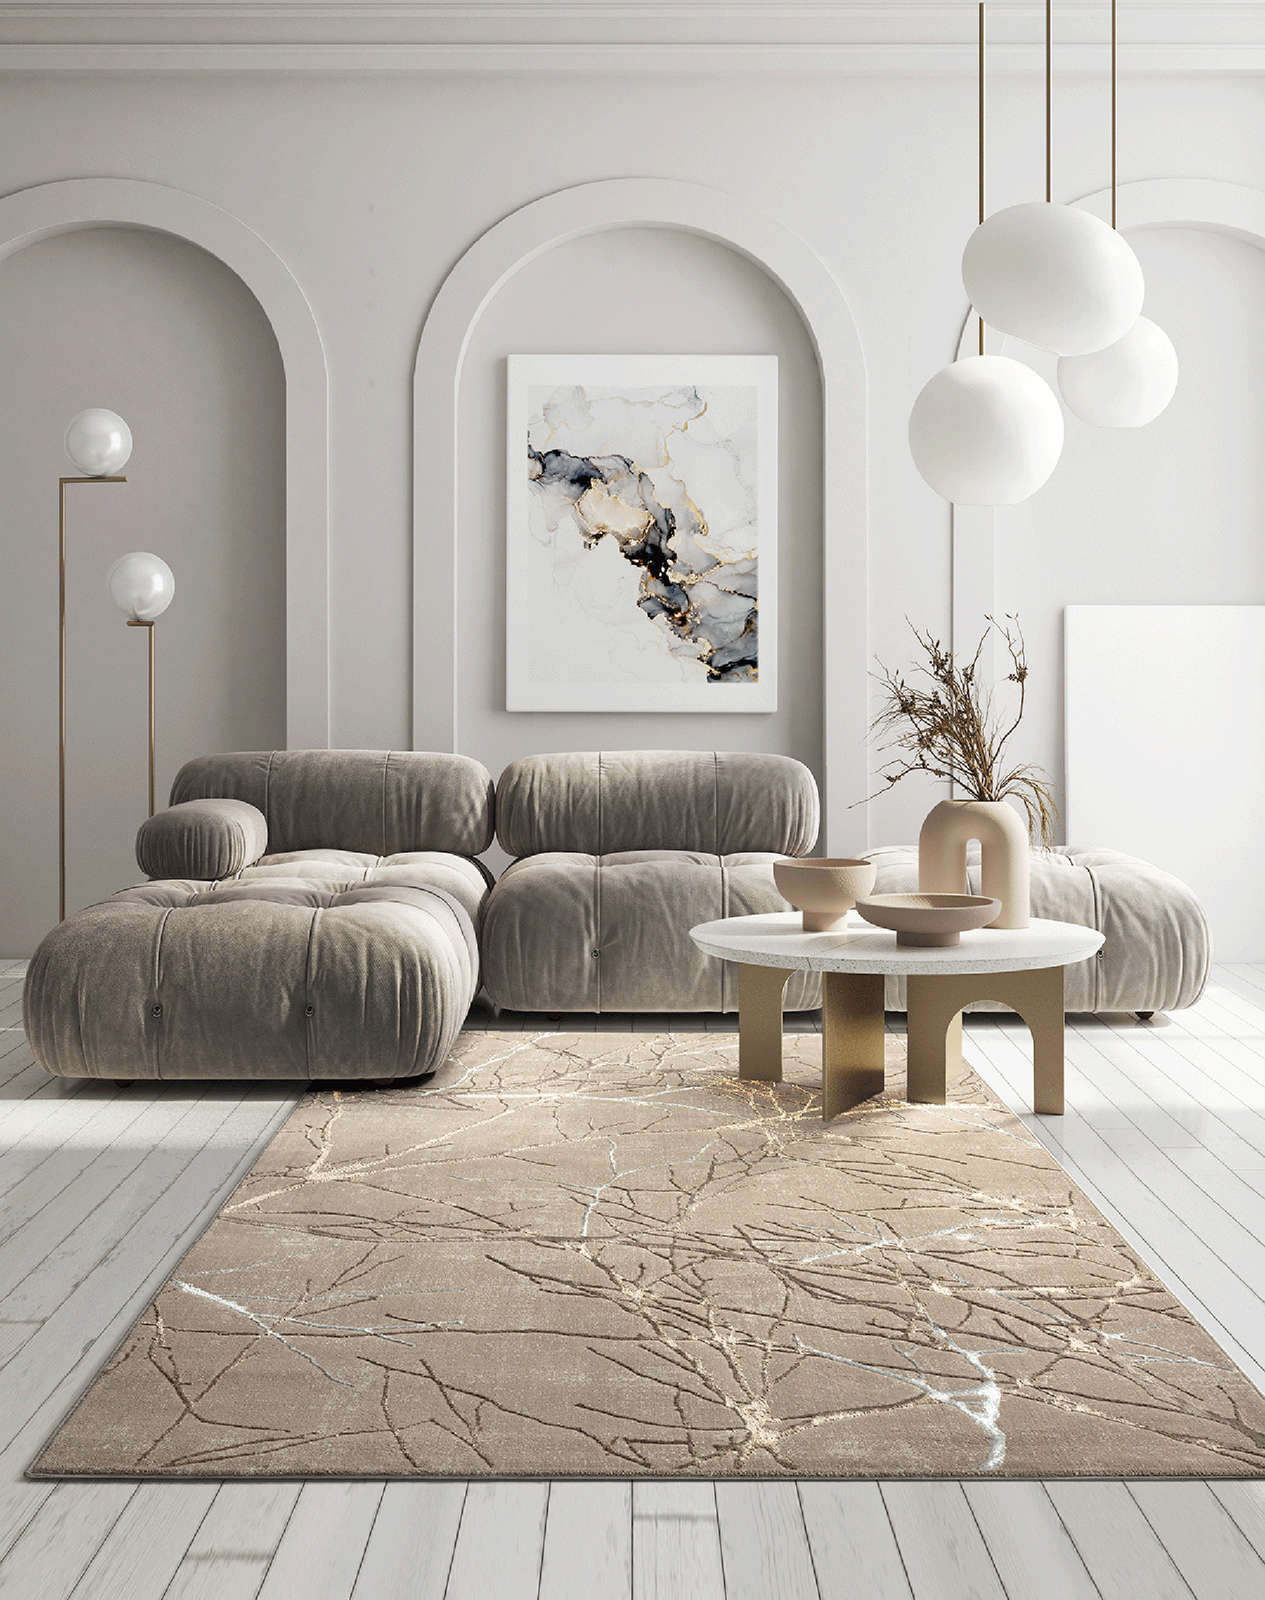             Hoogpolig tapijt in zacht beige - 290 x 200 cm
        